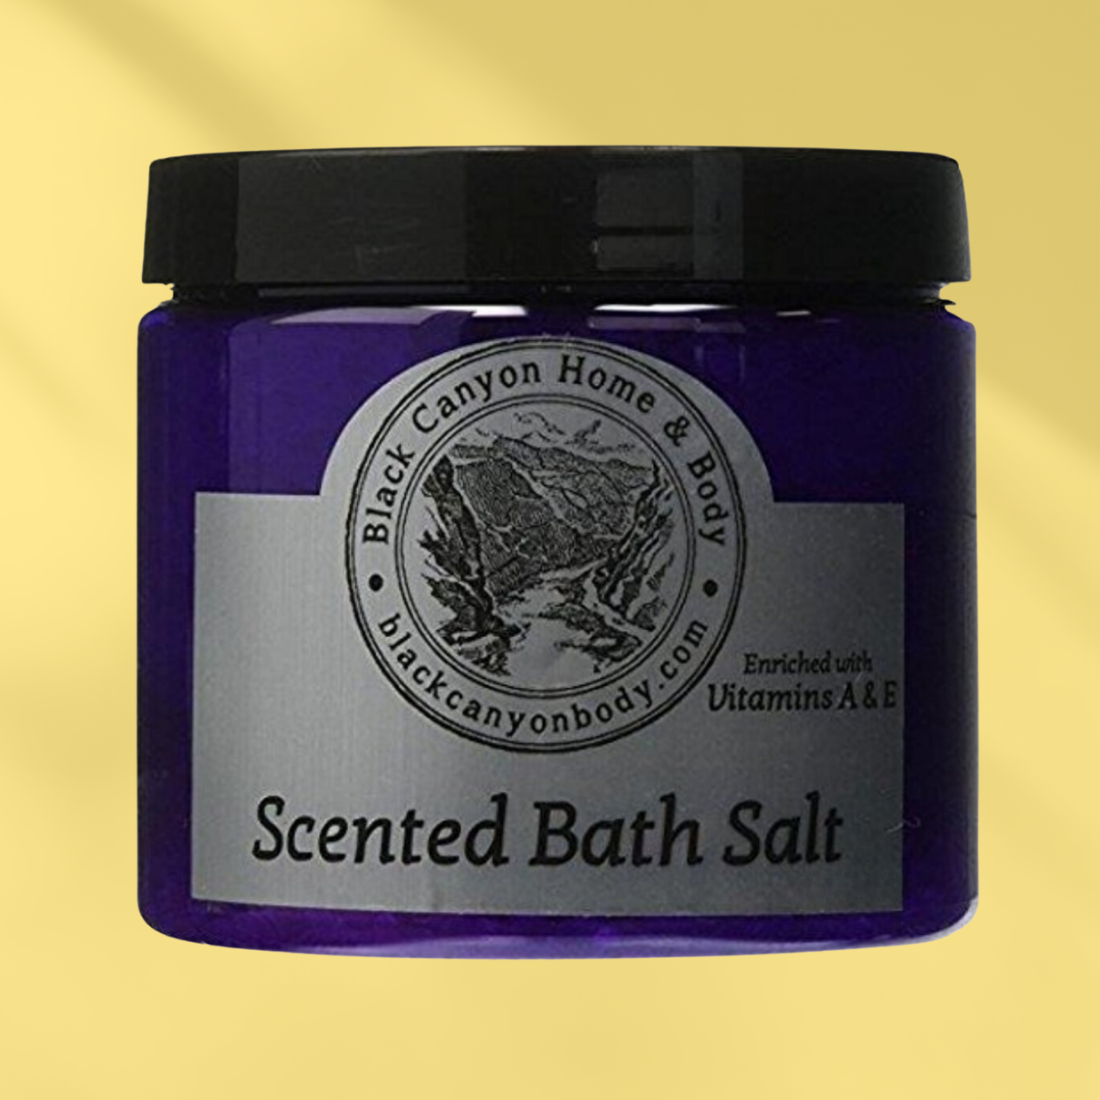 Paydens Cobalt Bergamot Fig & Leather Scented Sea Salt Bath Soak For Men